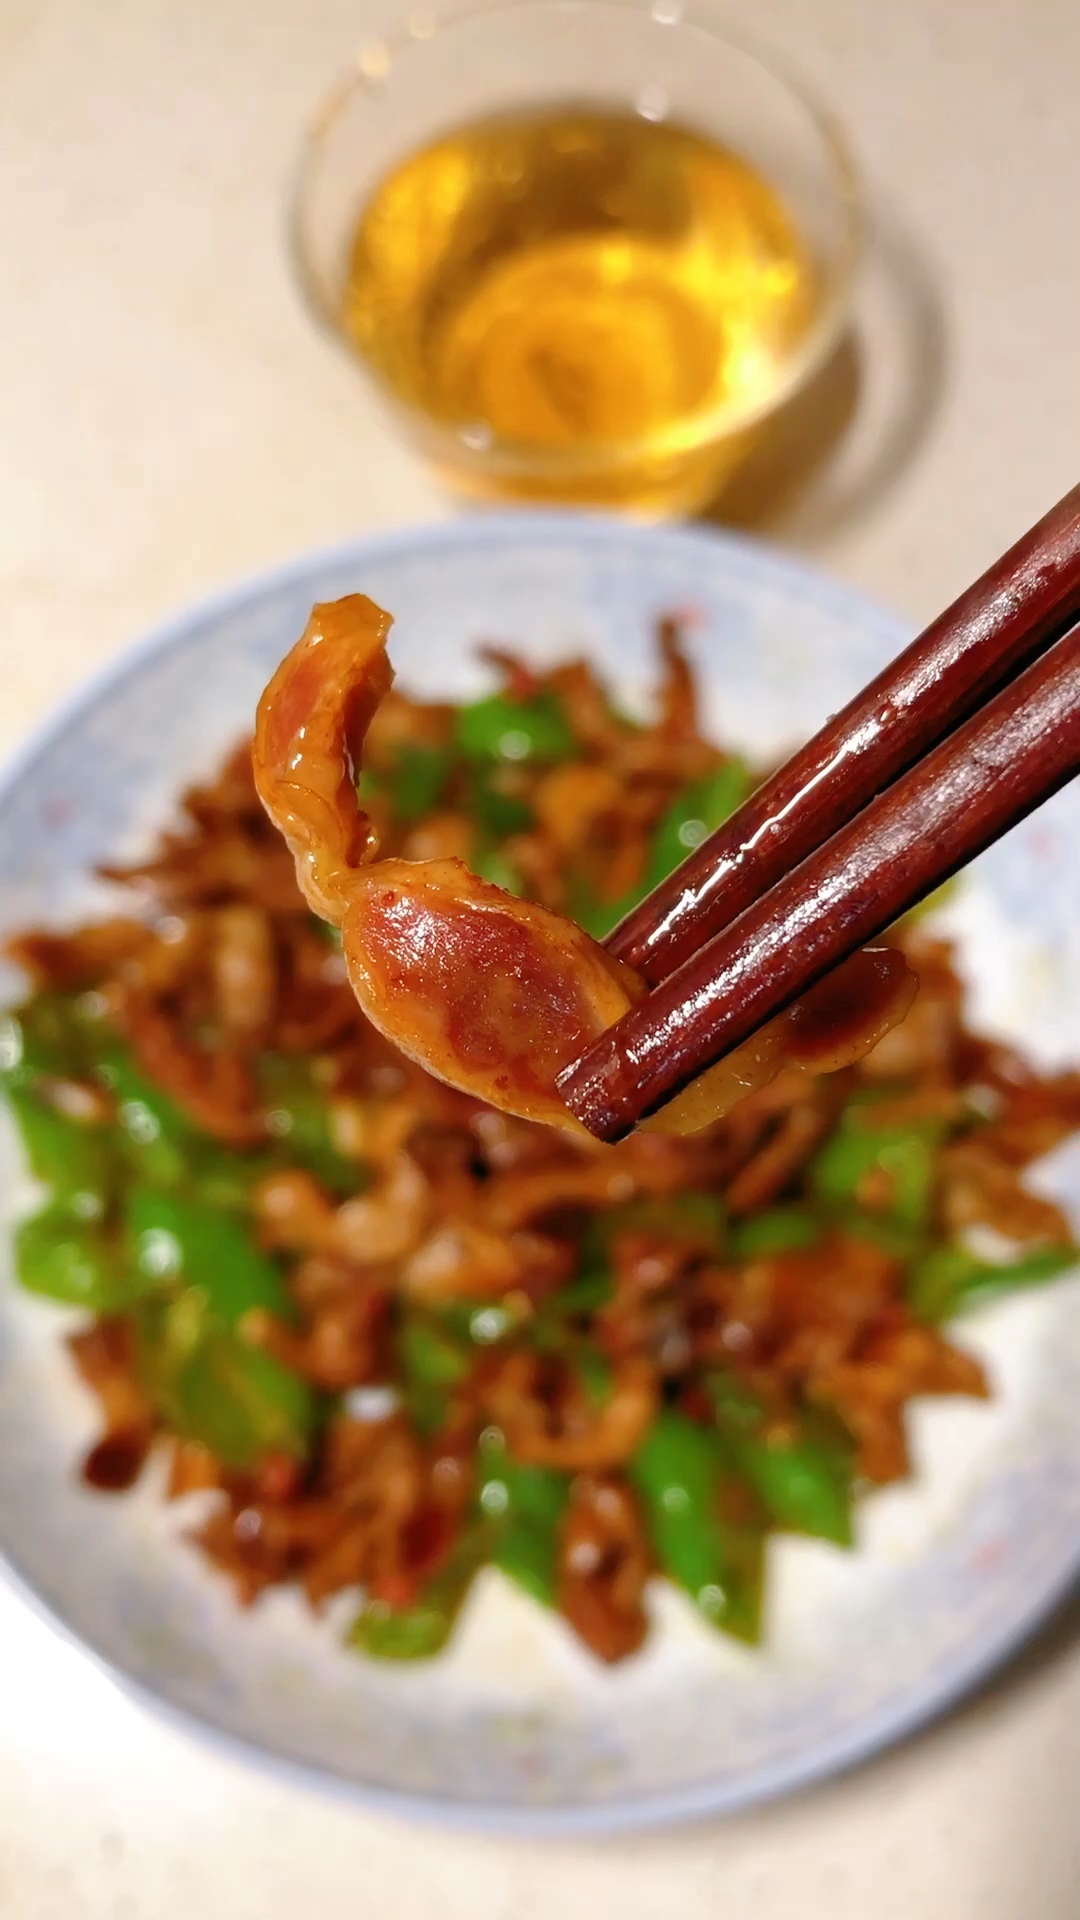 辣椒炒鸡胗,一个人在家简单吃点,也算个下酒菜吧!